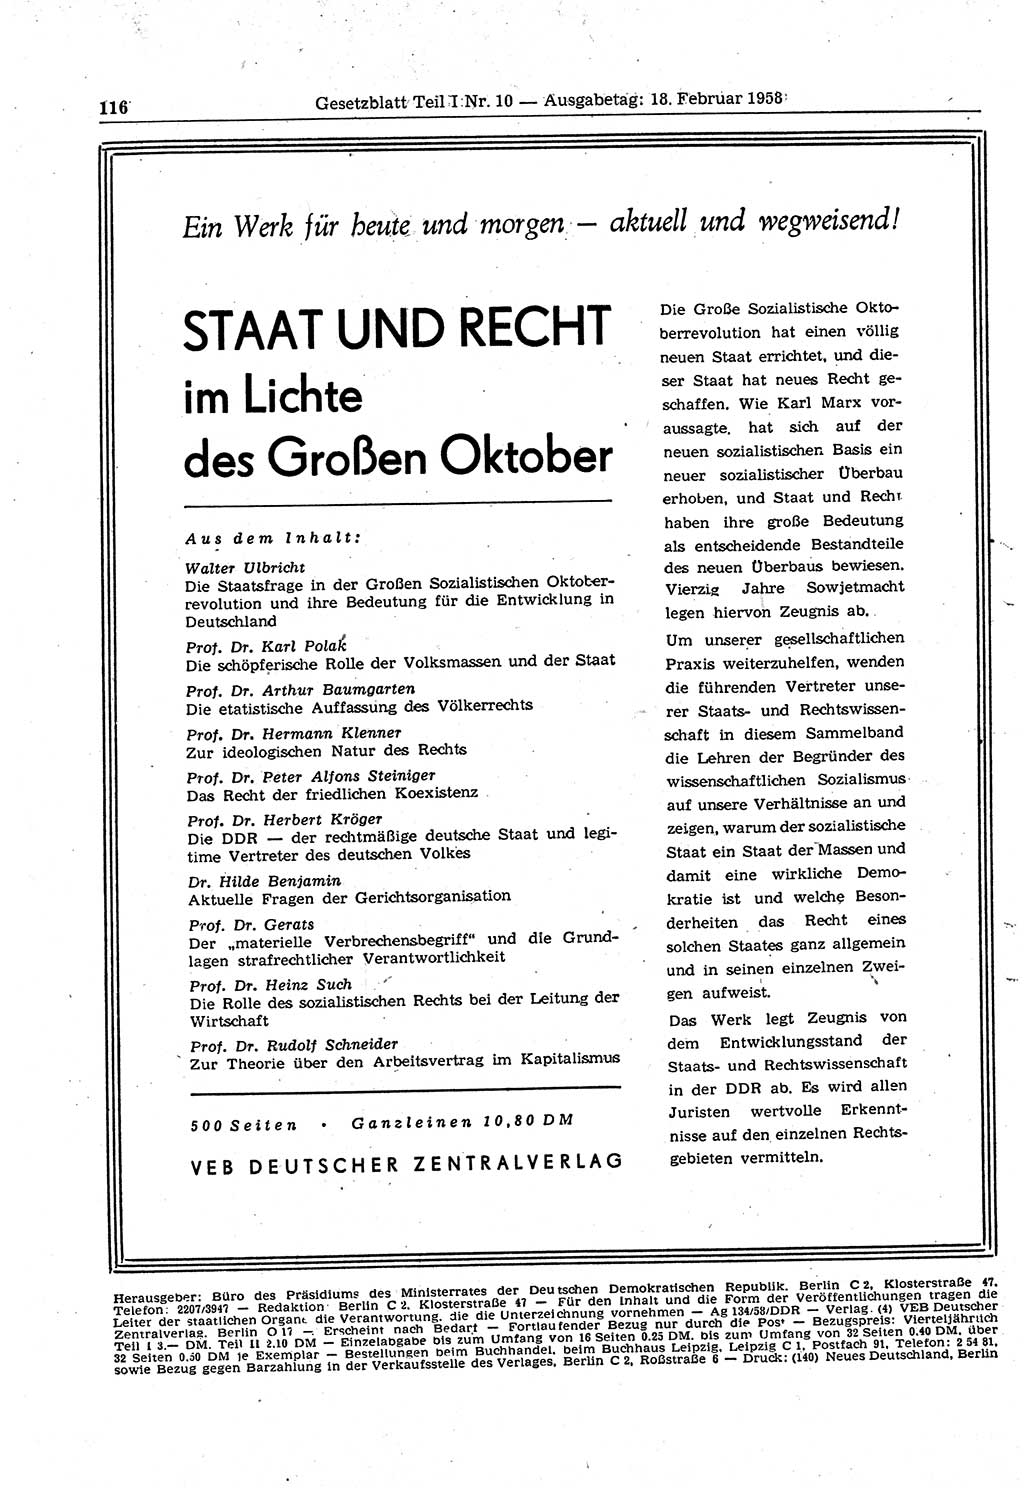 Gesetzblatt (GBl.) der Deutschen Demokratischen Republik (DDR) Teil Ⅰ 1958, Seite 116 (GBl. DDR Ⅰ 1958, S. 116)